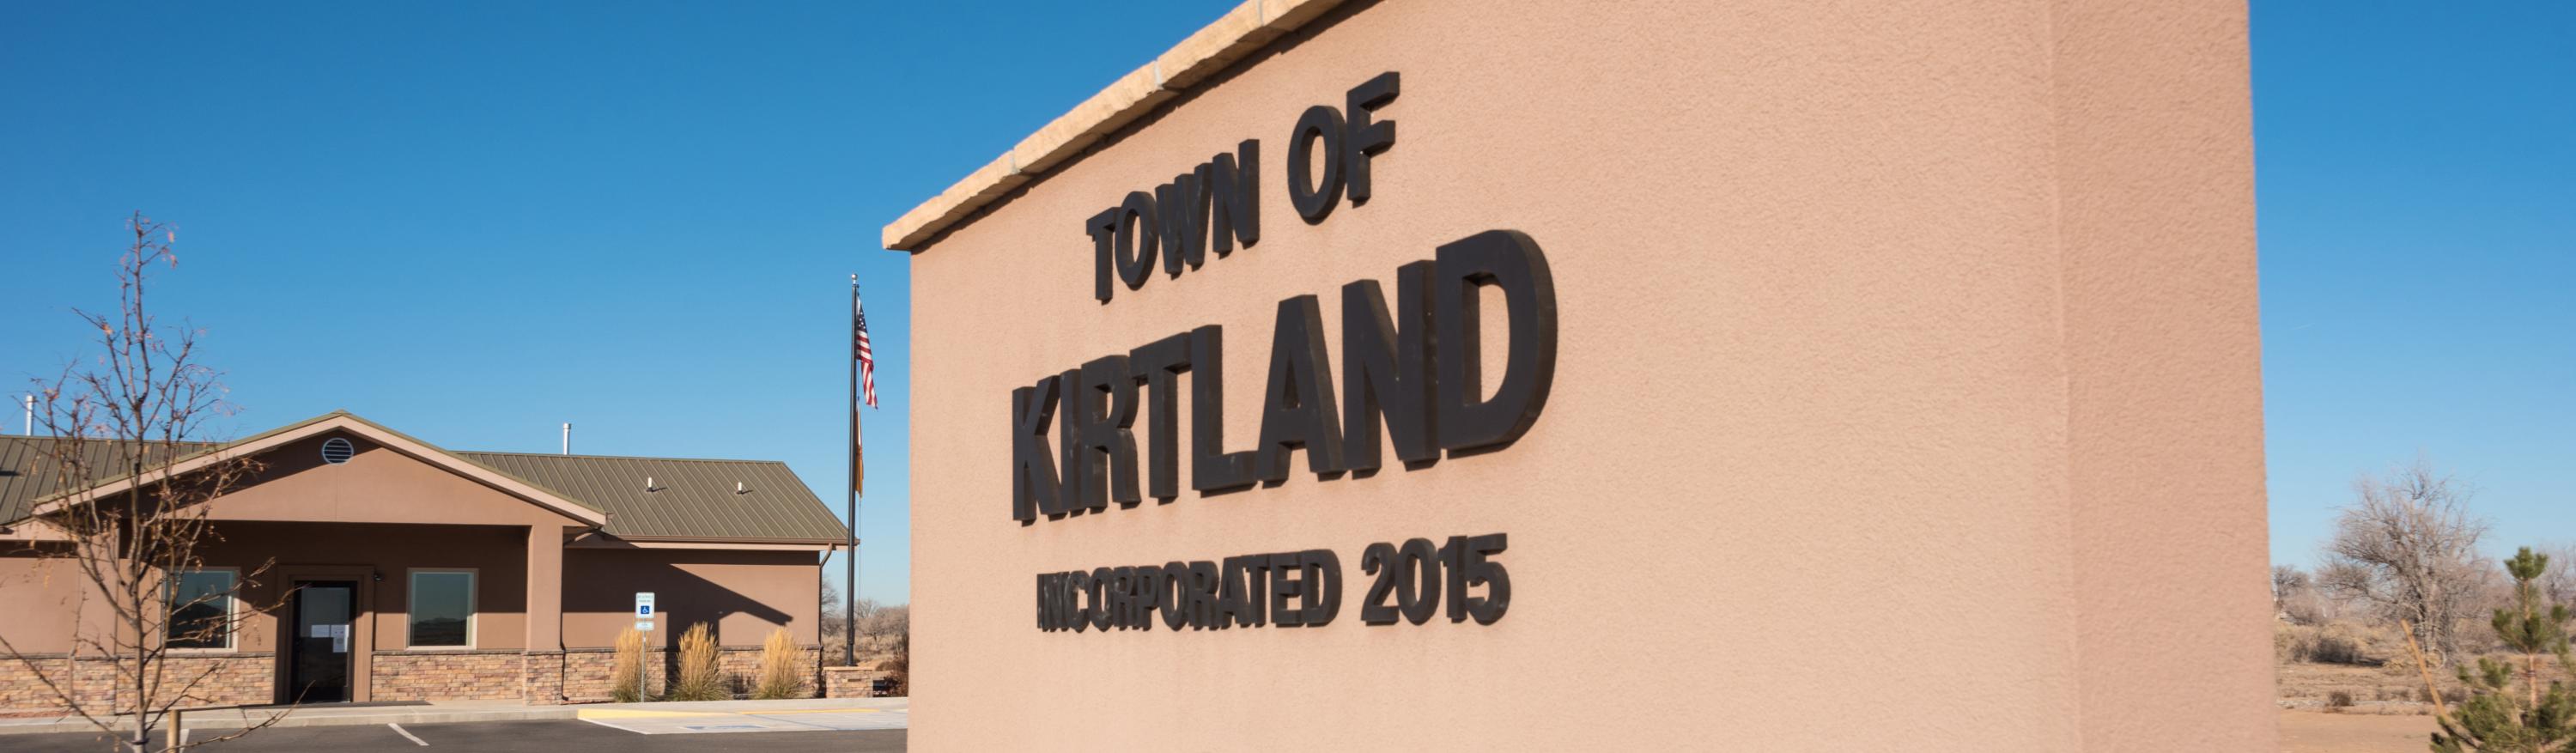 Kirtland NM Image